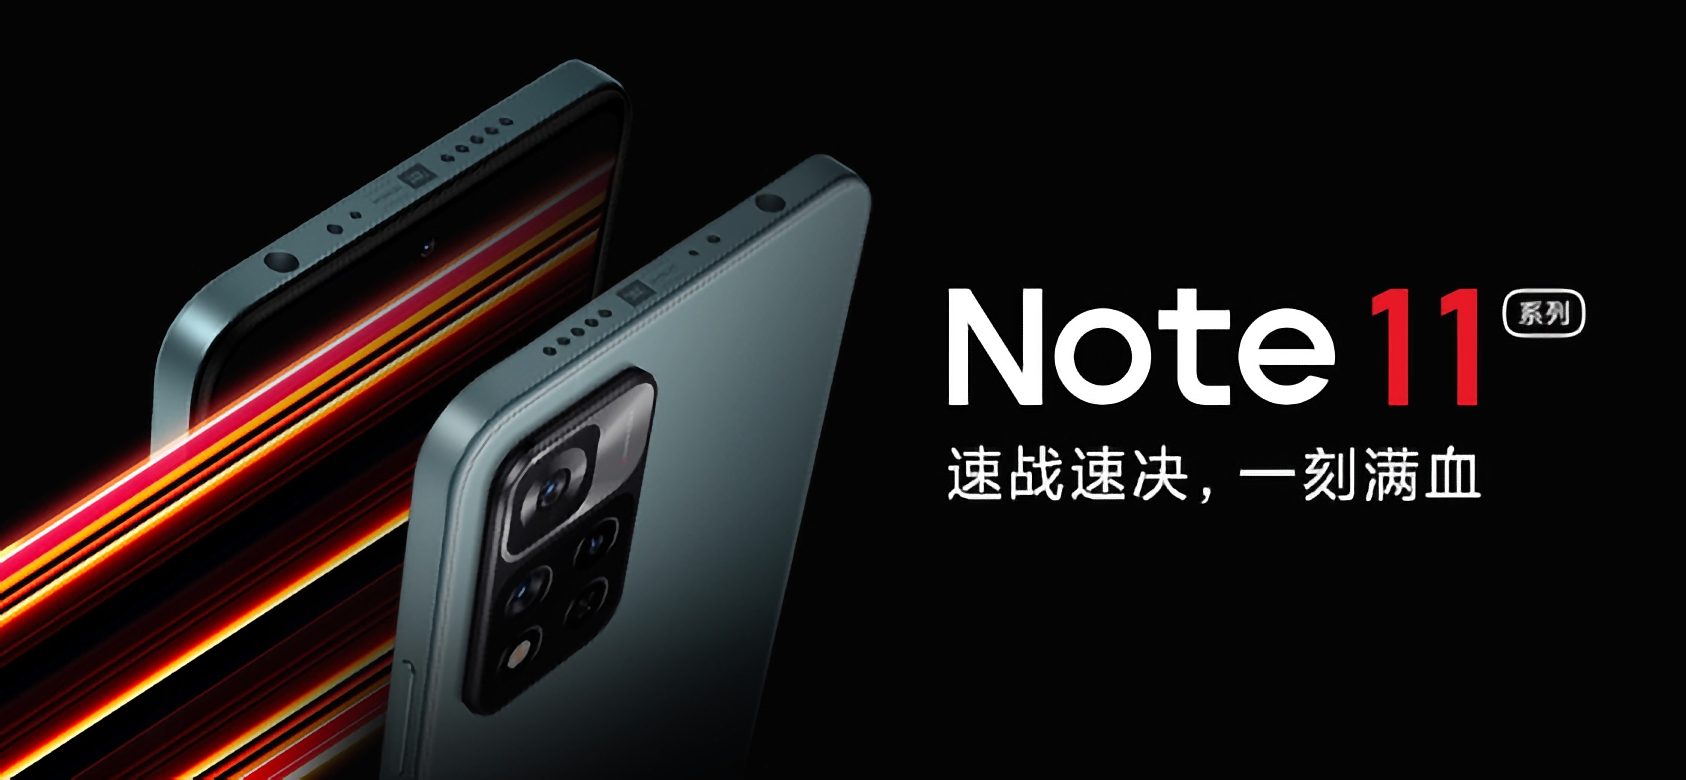 El Redmi Note 11 tendrá Dimensity 810, cámara de 50MP y costará desde 190 dólares